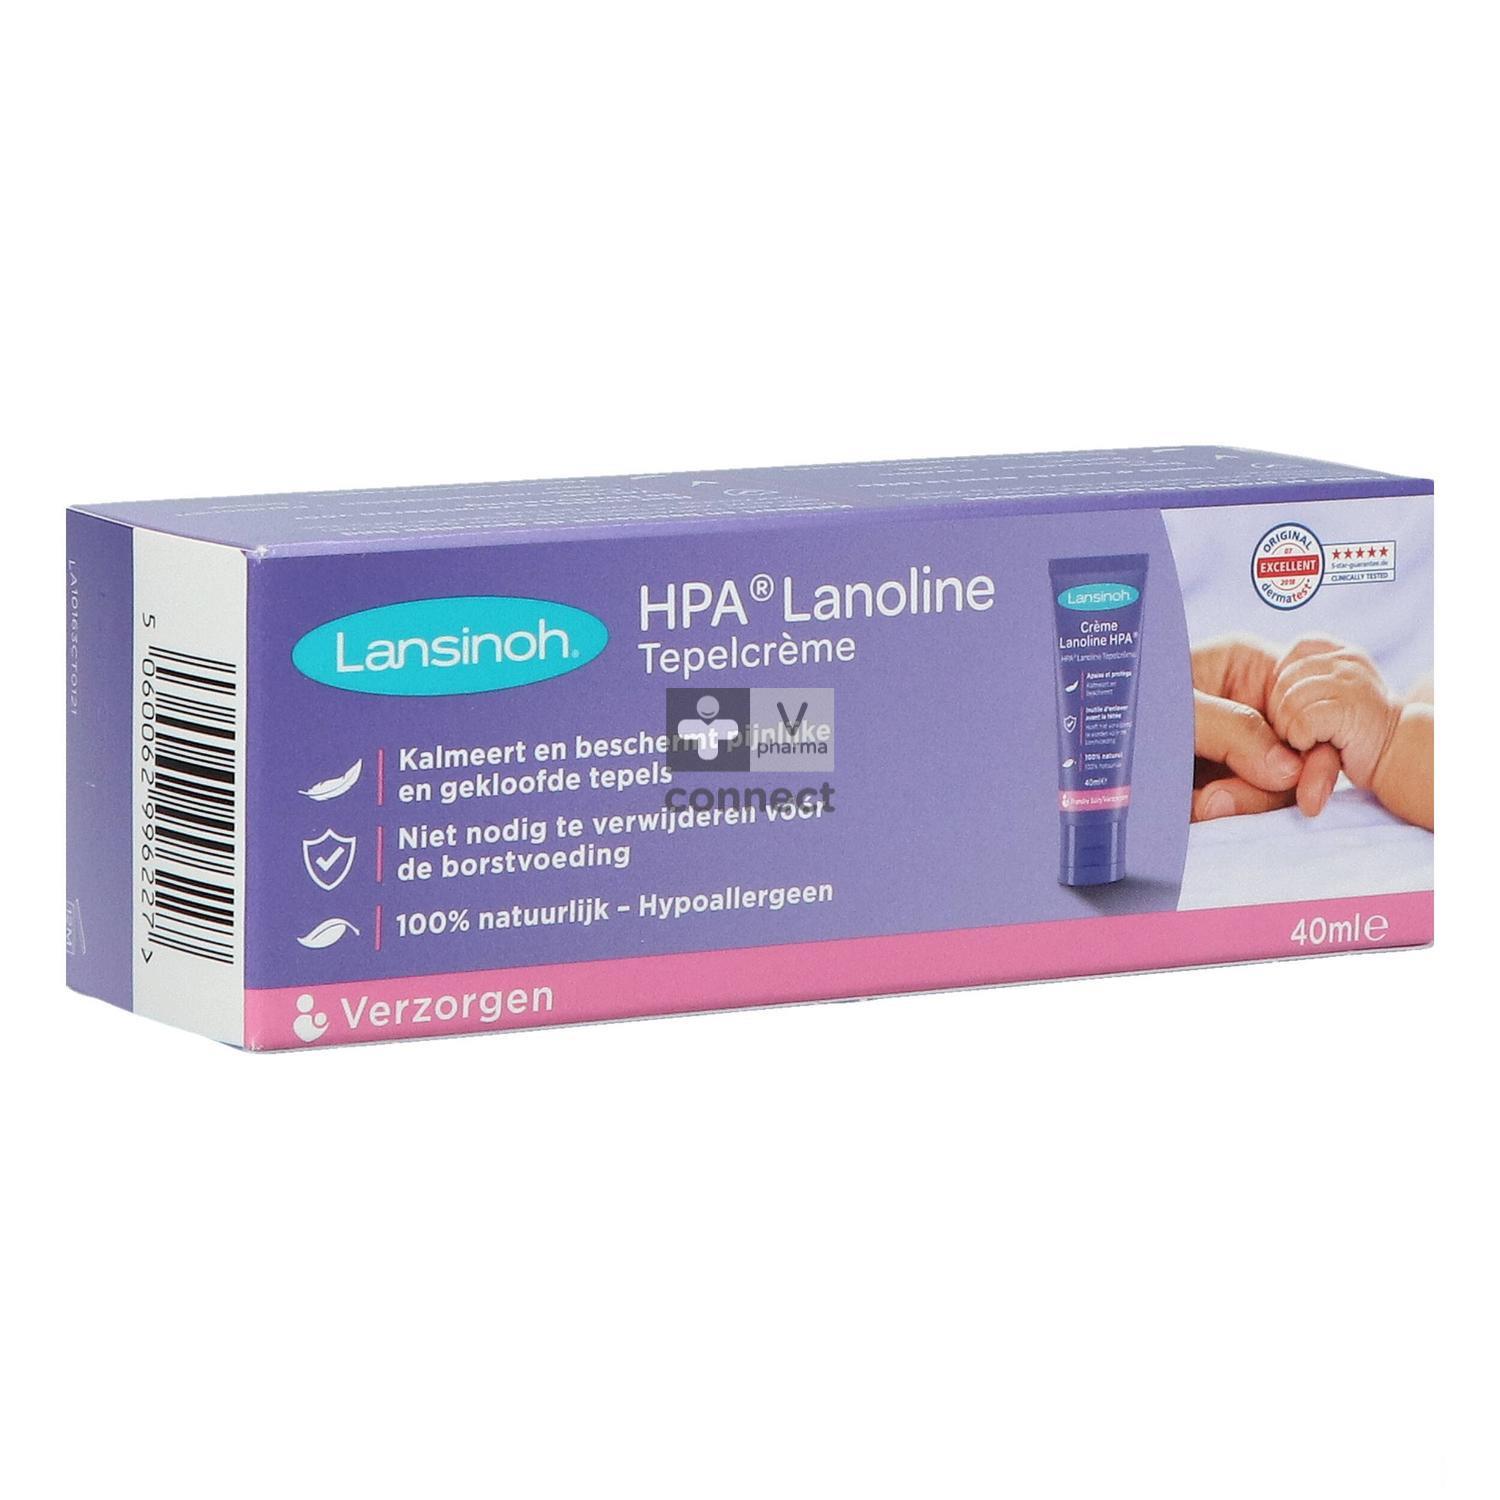 LANSINOH - Crème hpa lanolin crème protectrice allaitement, 40ml